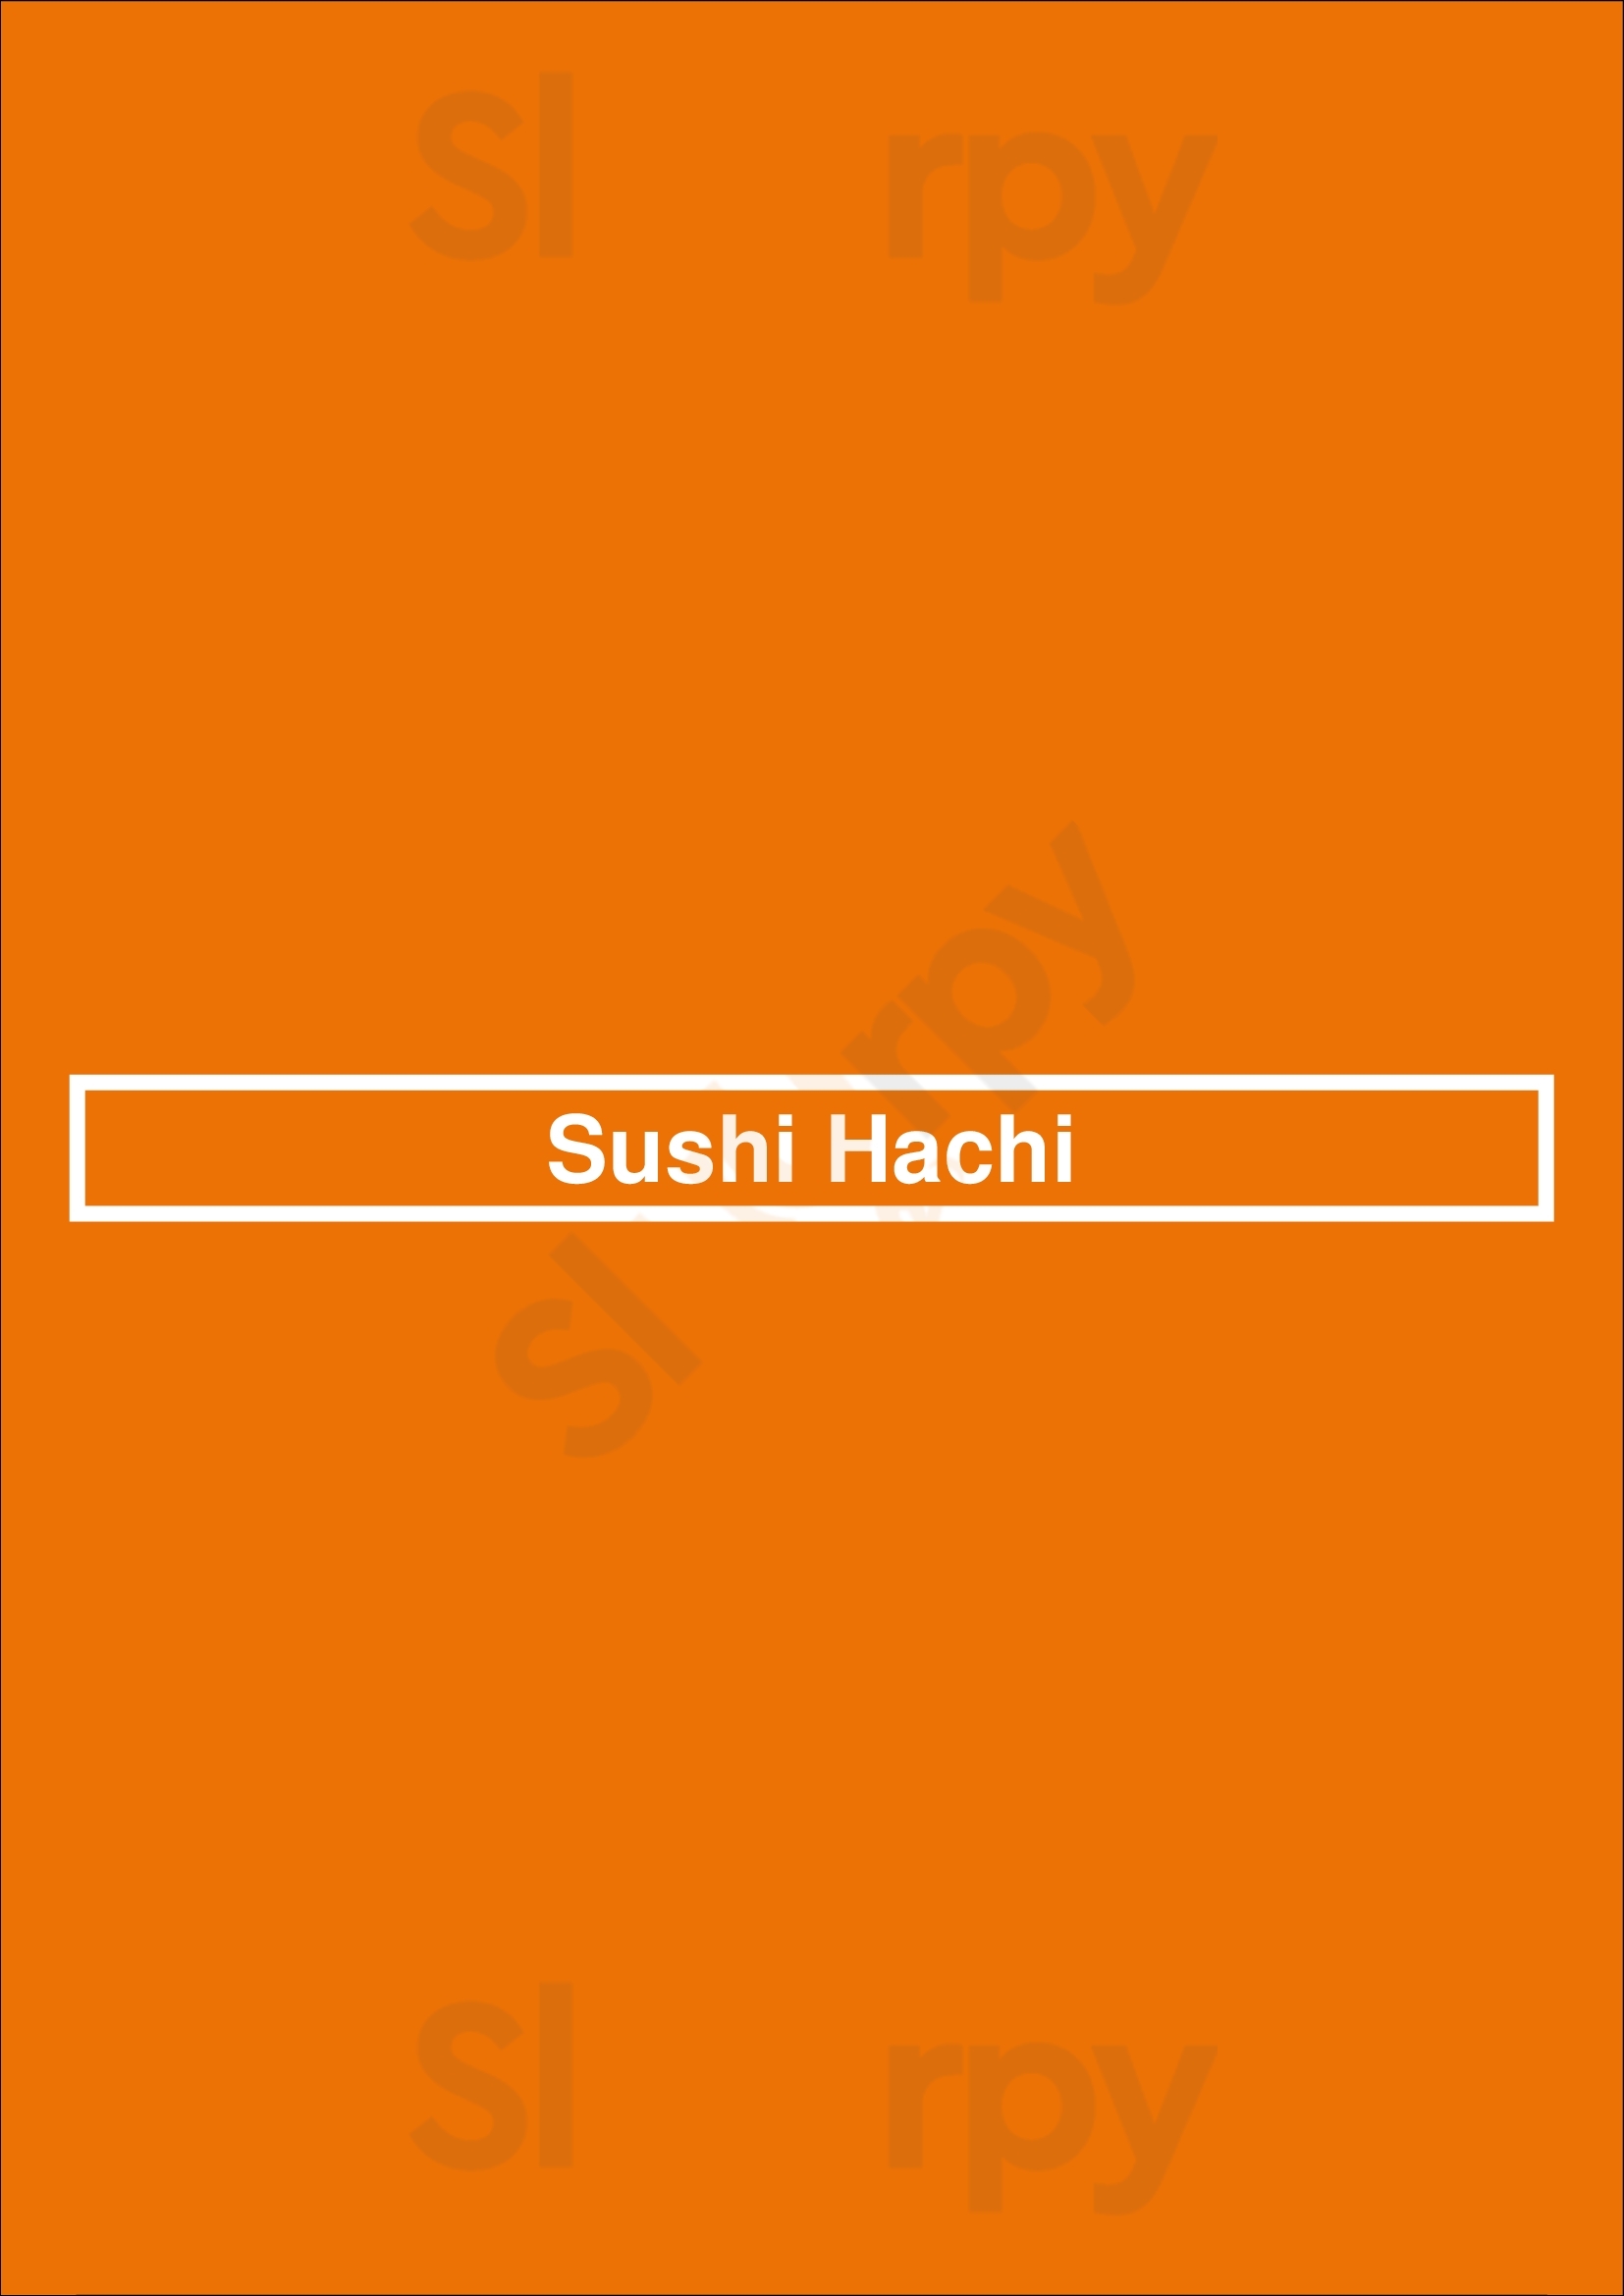 Sushi Hachi Washington DC Menu - 1